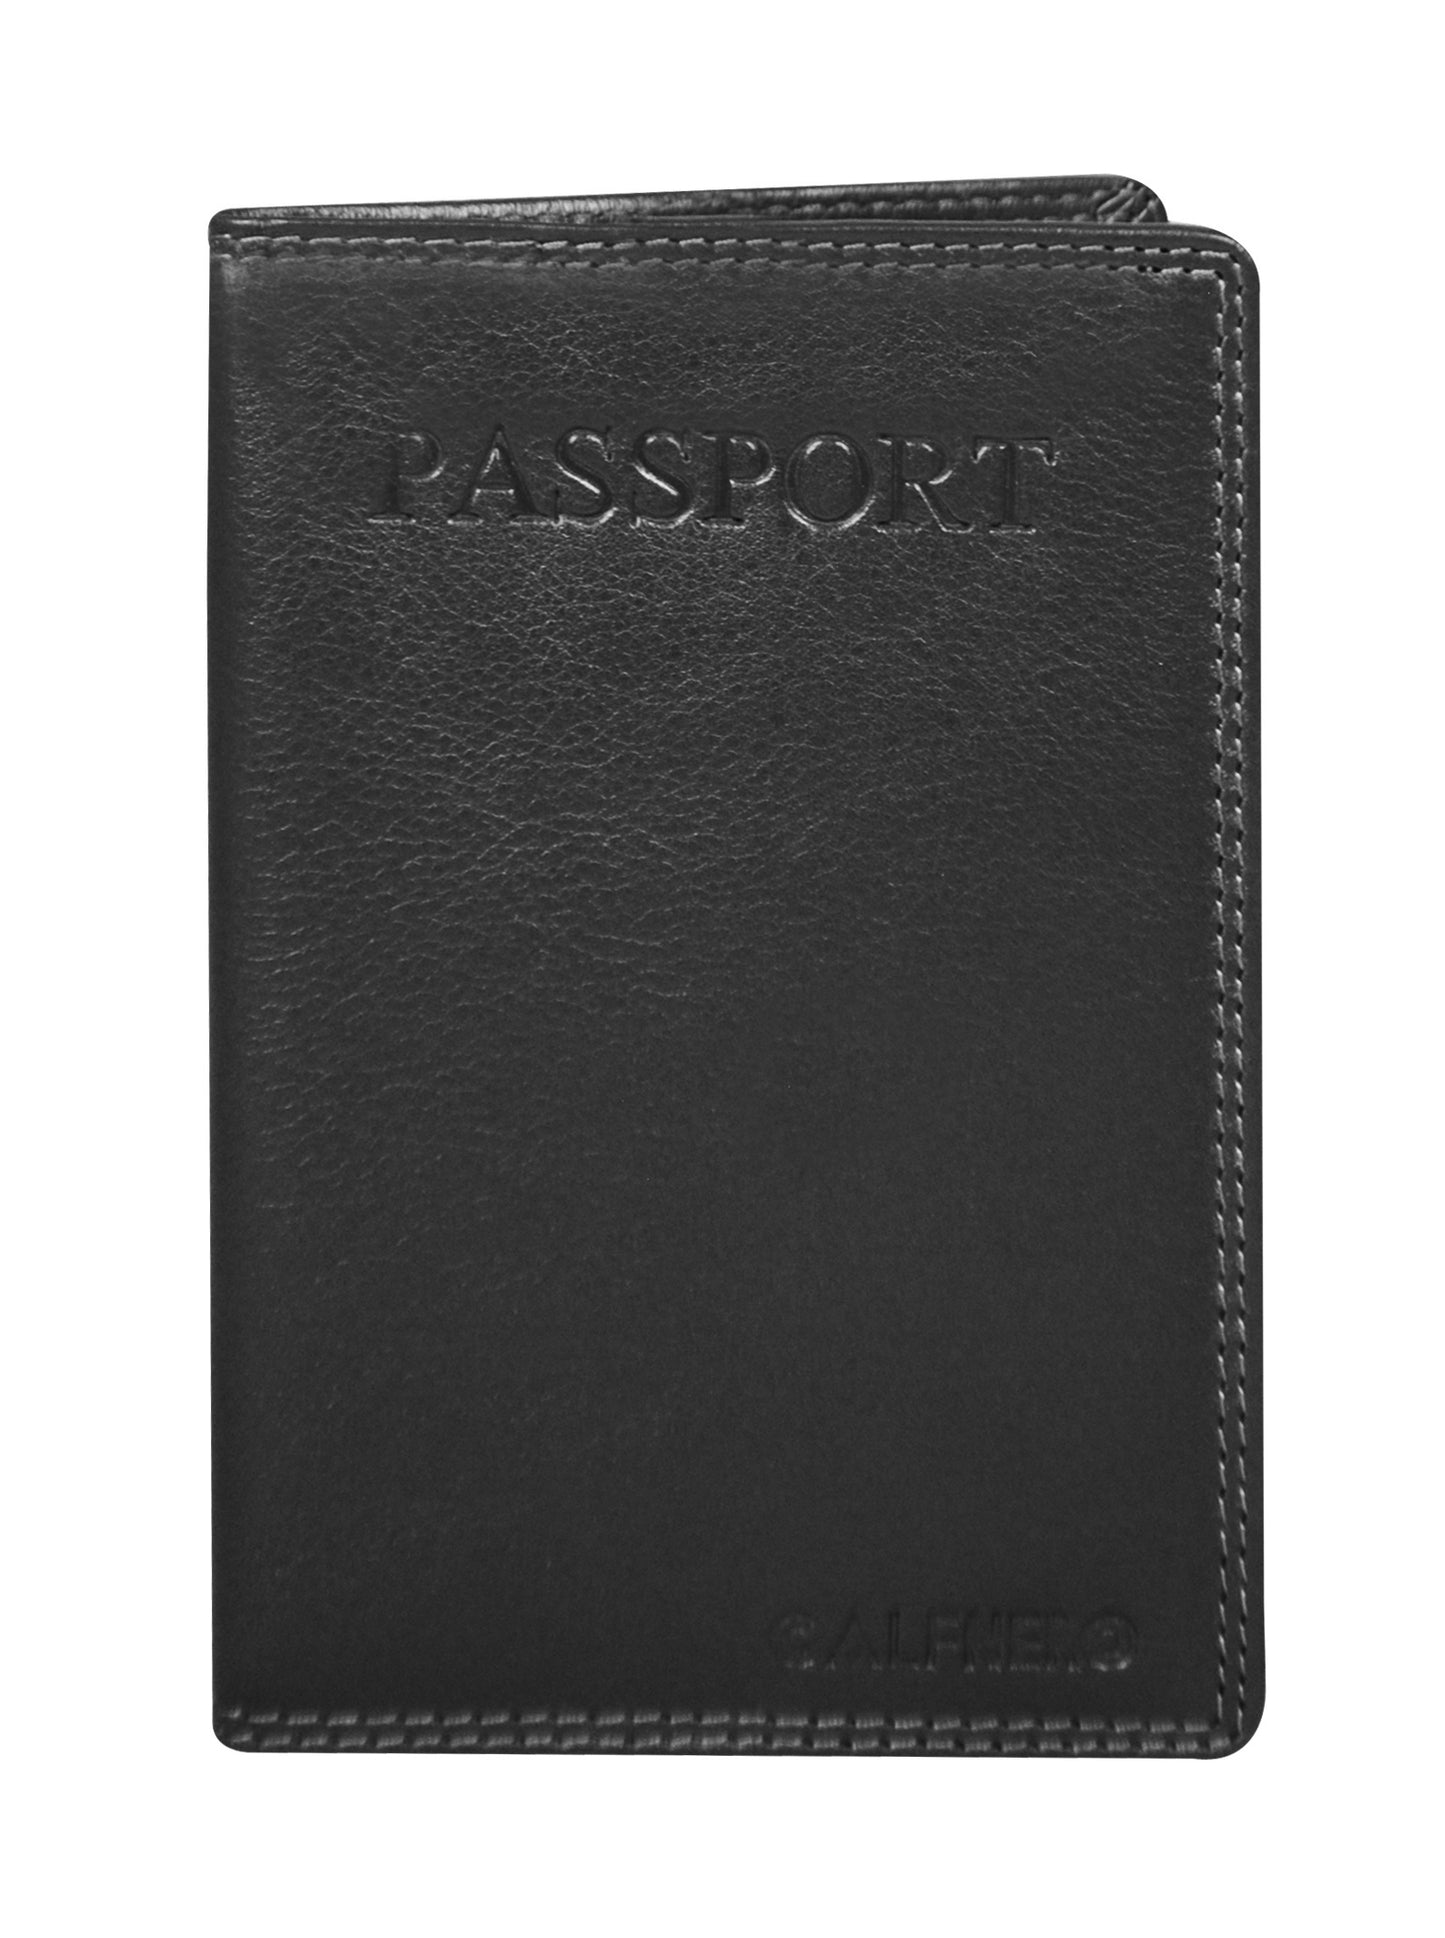 Calfnero Genuine Leather Passport Wallet-Passport Holder (P10-Black)